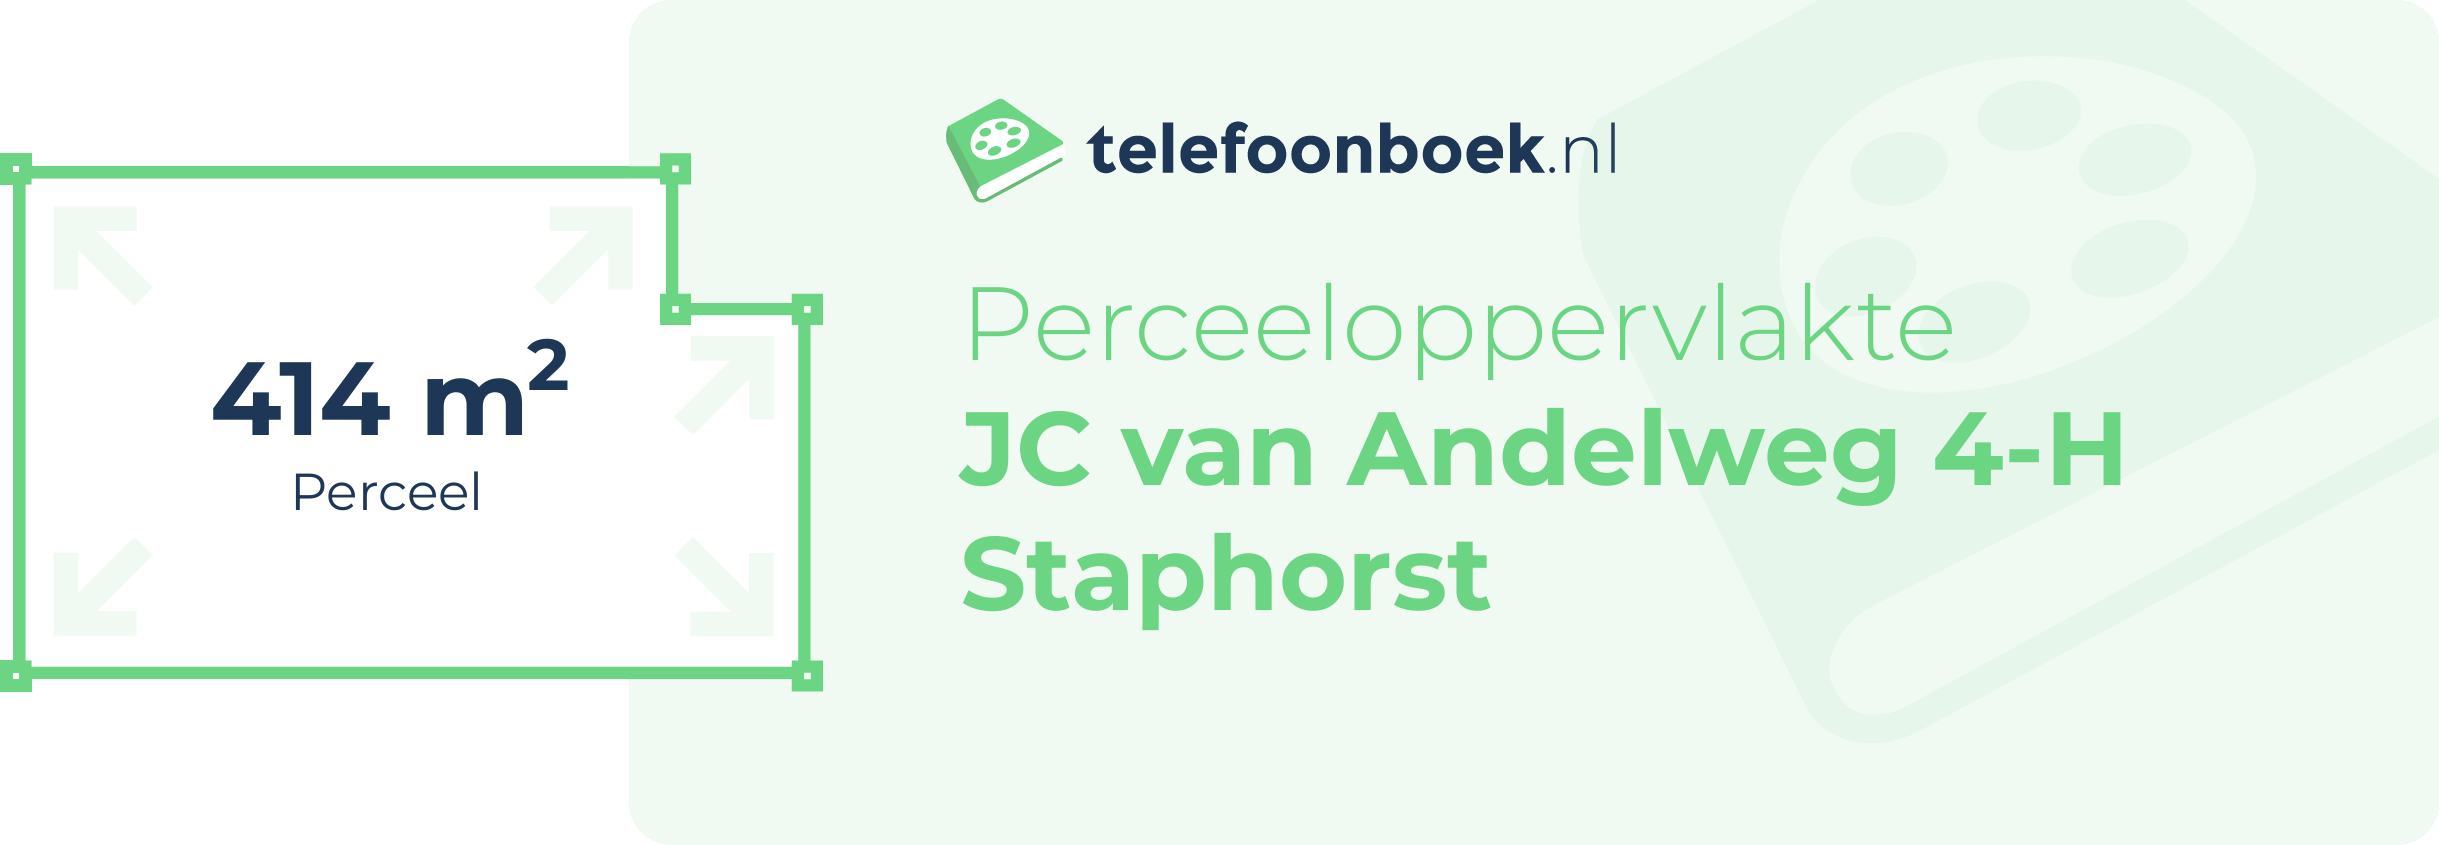 Perceeloppervlakte JC Van Andelweg 4-H Staphorst